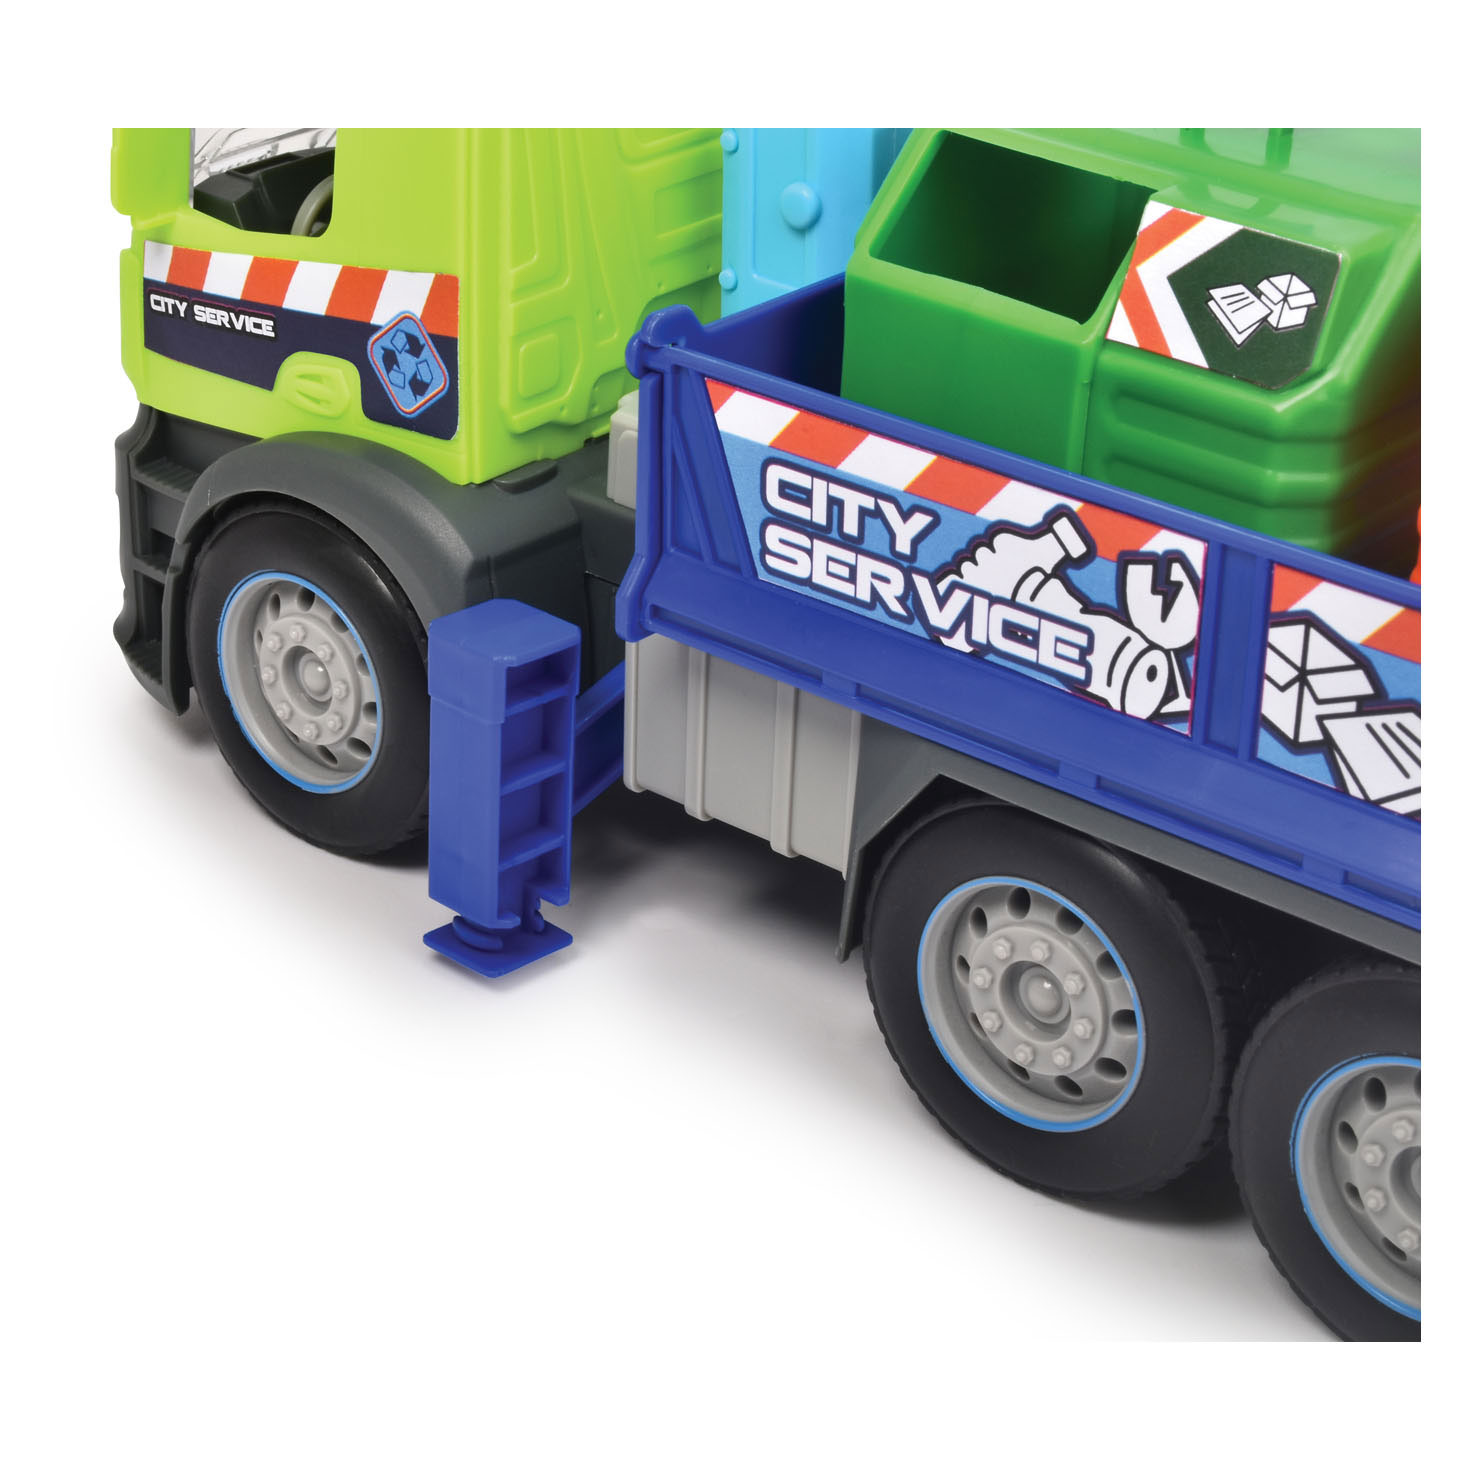 Dickie Action Truck - Recycle Vrachtwagen met Bakken